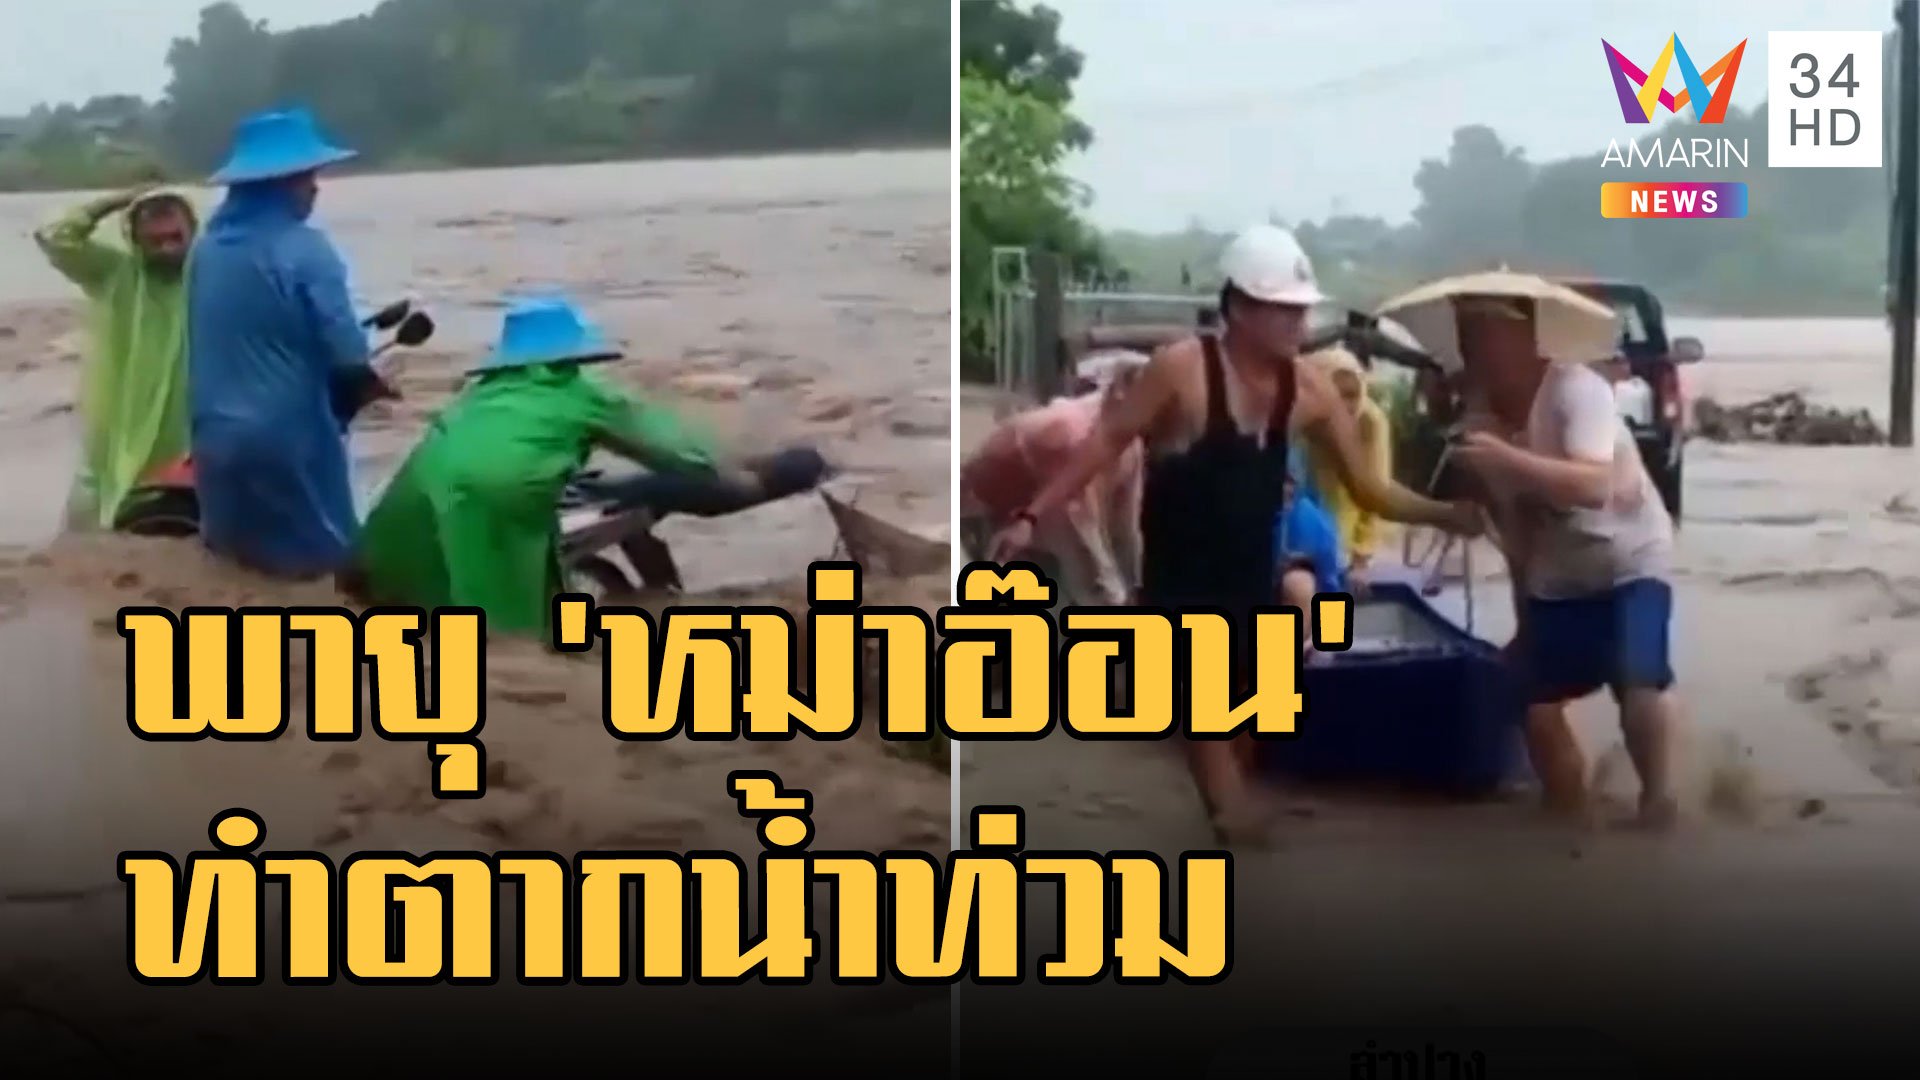 พิษ 'หมาอ๊อน' ถล่มไทย ท่าสองยาง จ.ตาก น้ำท่วมหนัก ต้นไม้ล้มนับร้อยต้น  | ข่าวเที่ยงอมรินทร์ | 26 ส.ค. 65 | AMARIN TVHD34